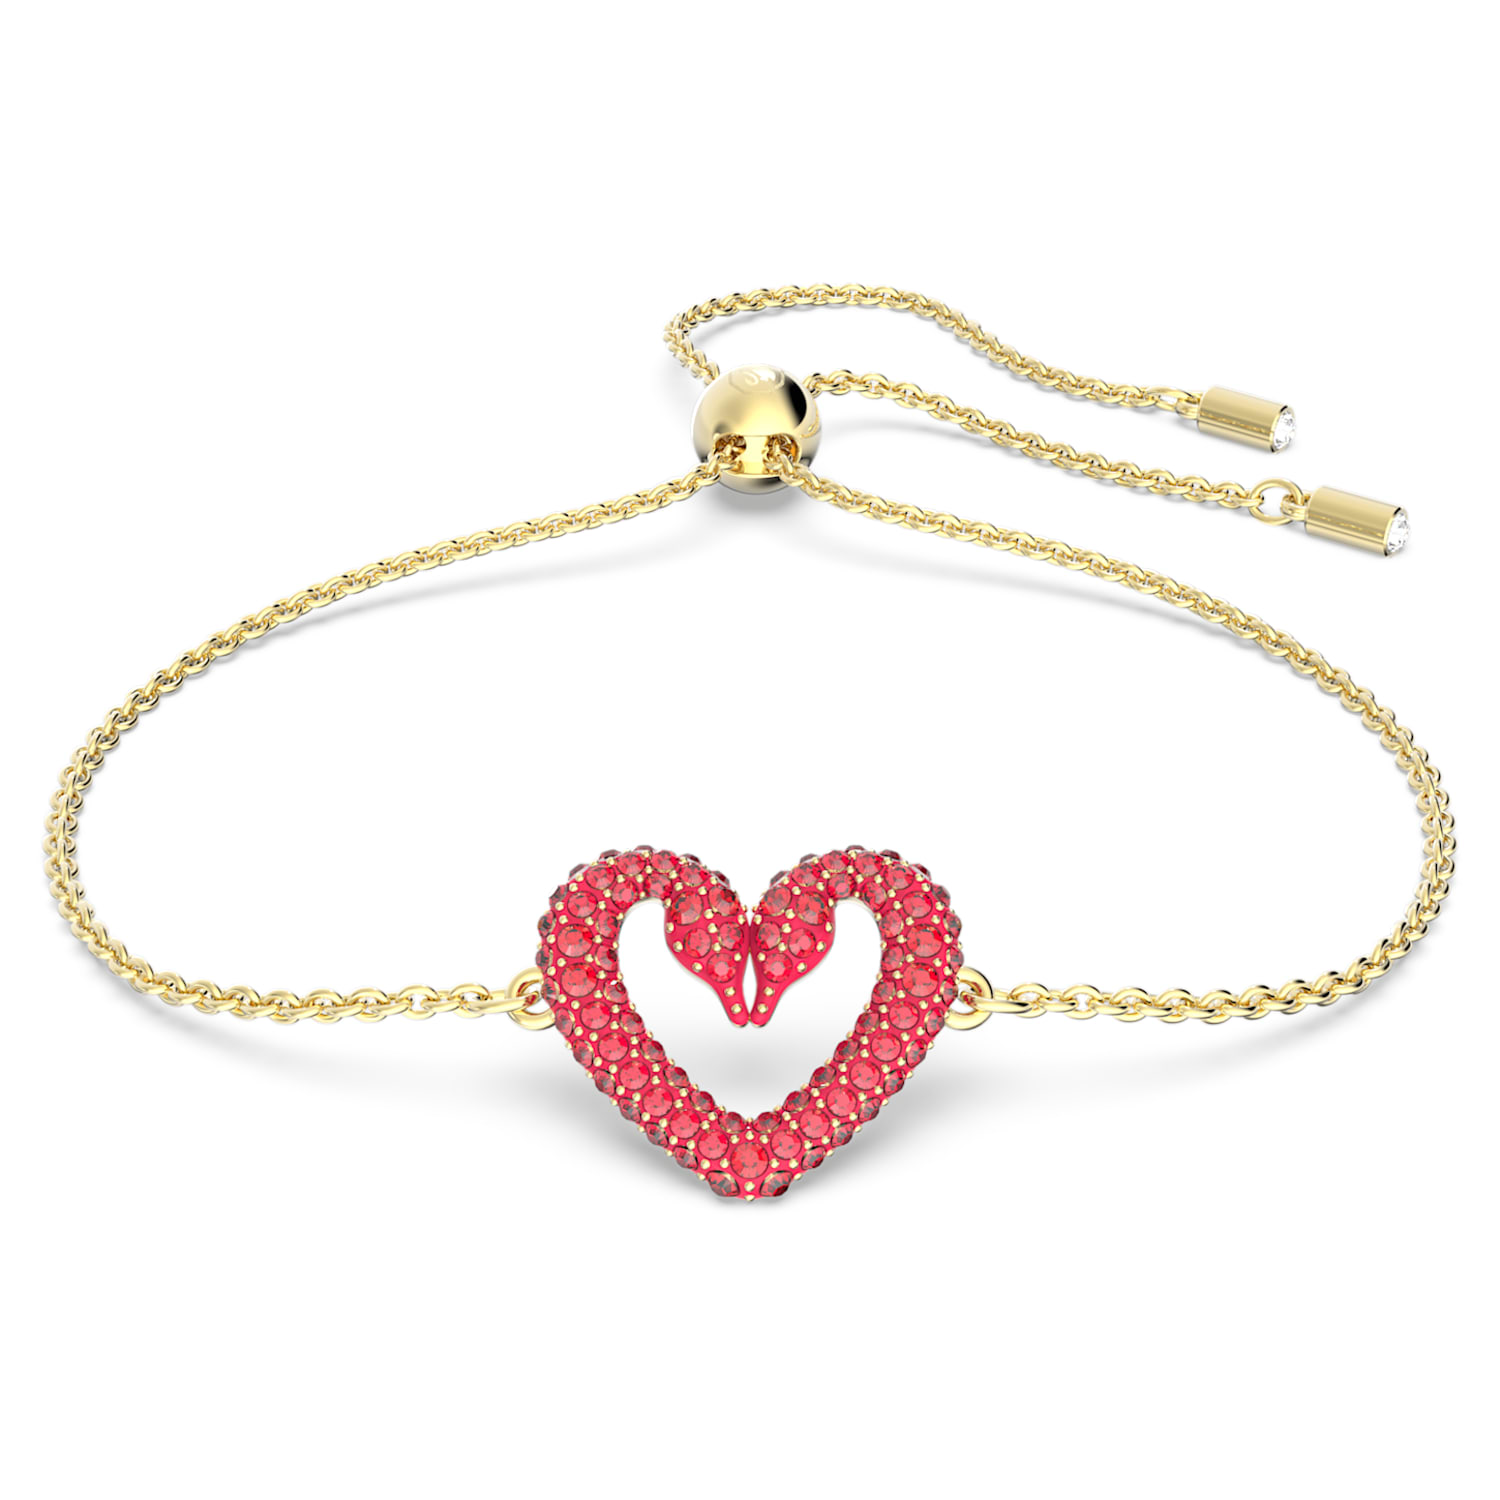 Lovely bracelet Heart White Rose goldtone plated  Swarovski